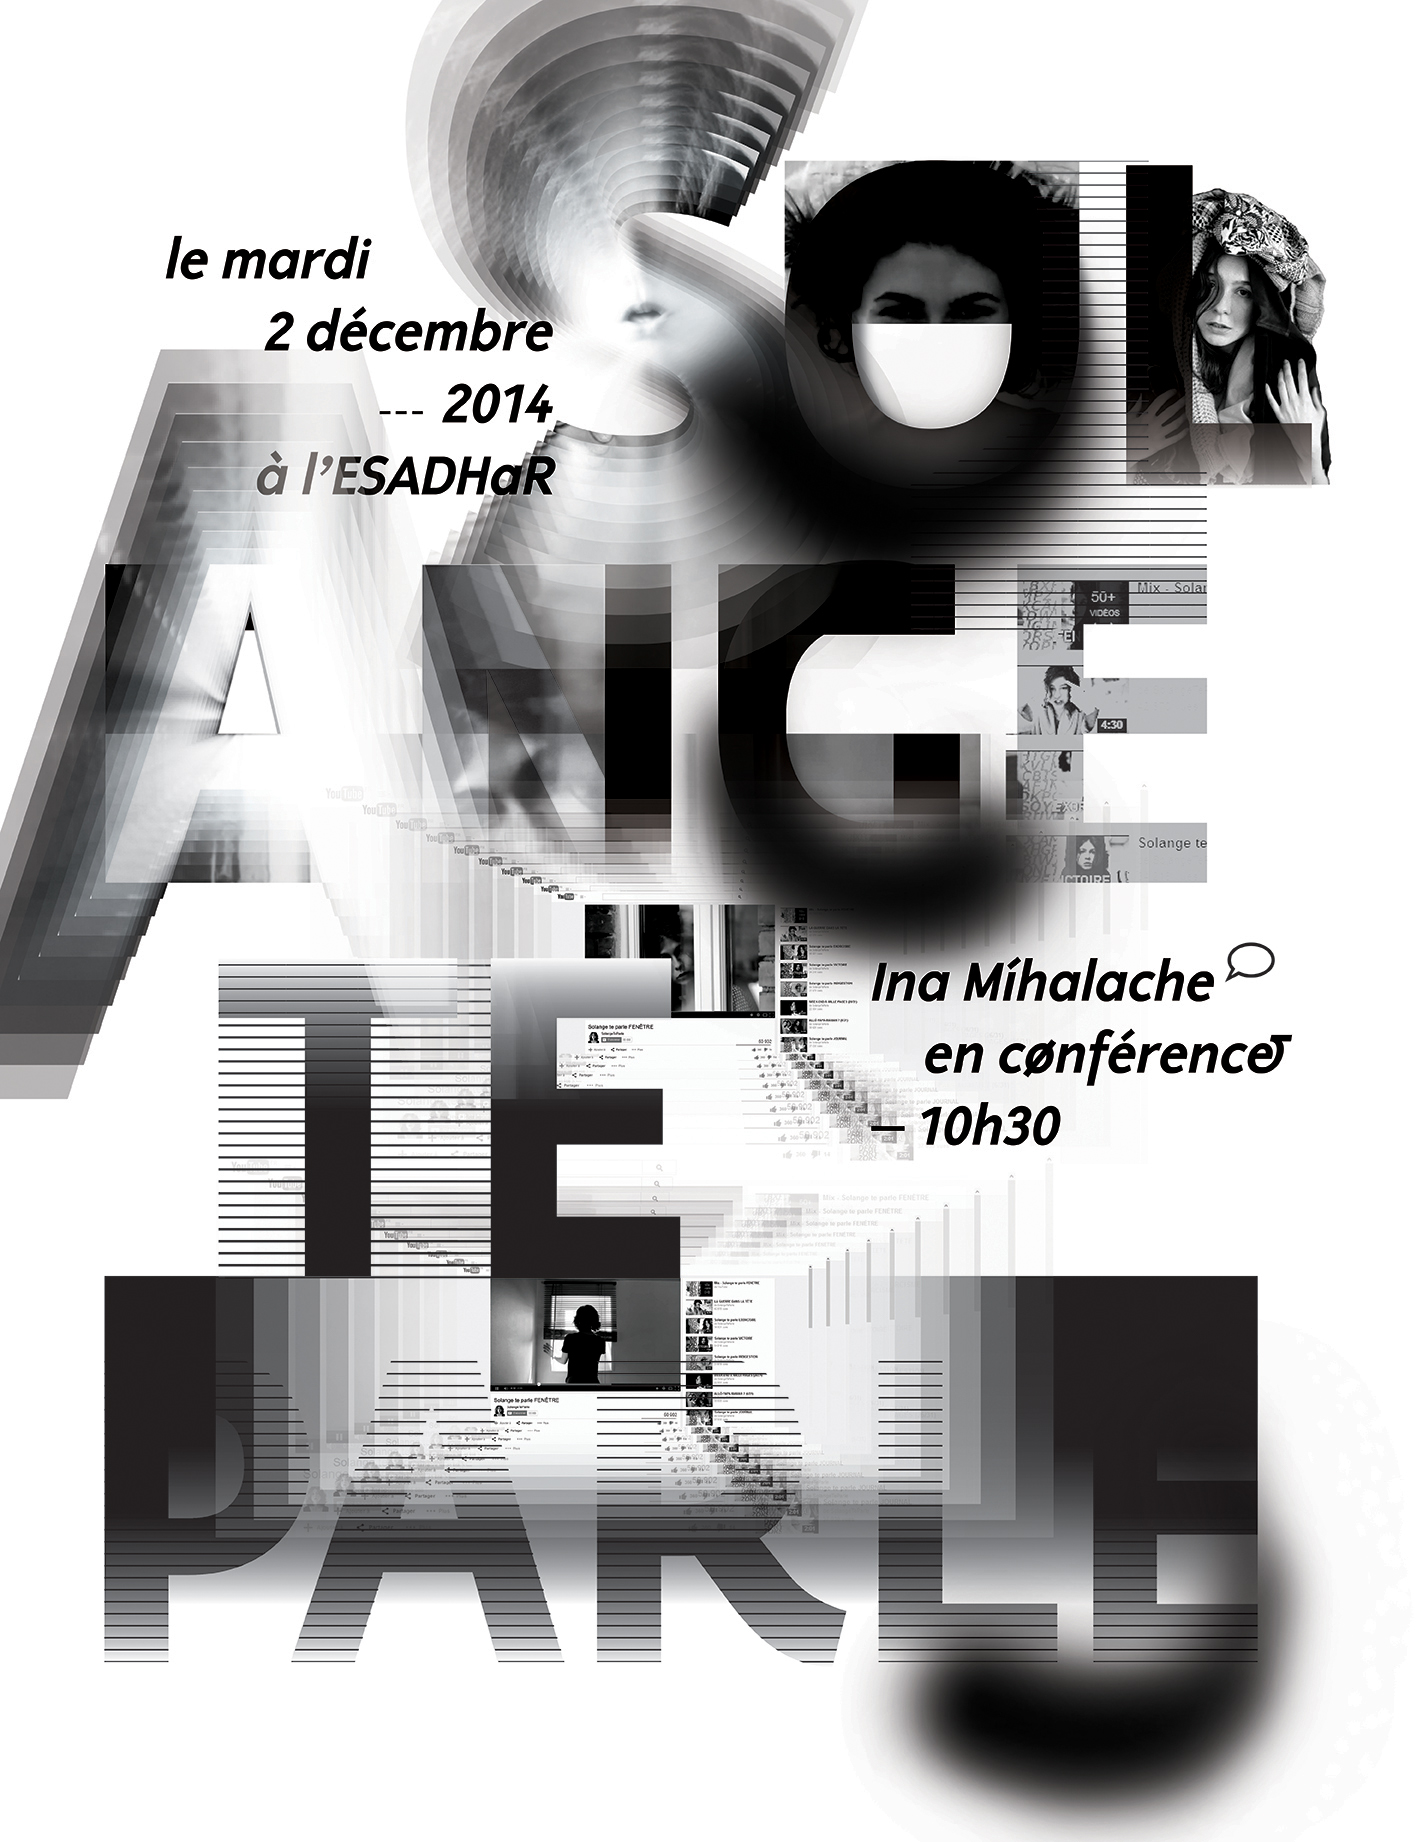 Poster for the conference of Jérôme Saint-Loubert Bié (version 2)